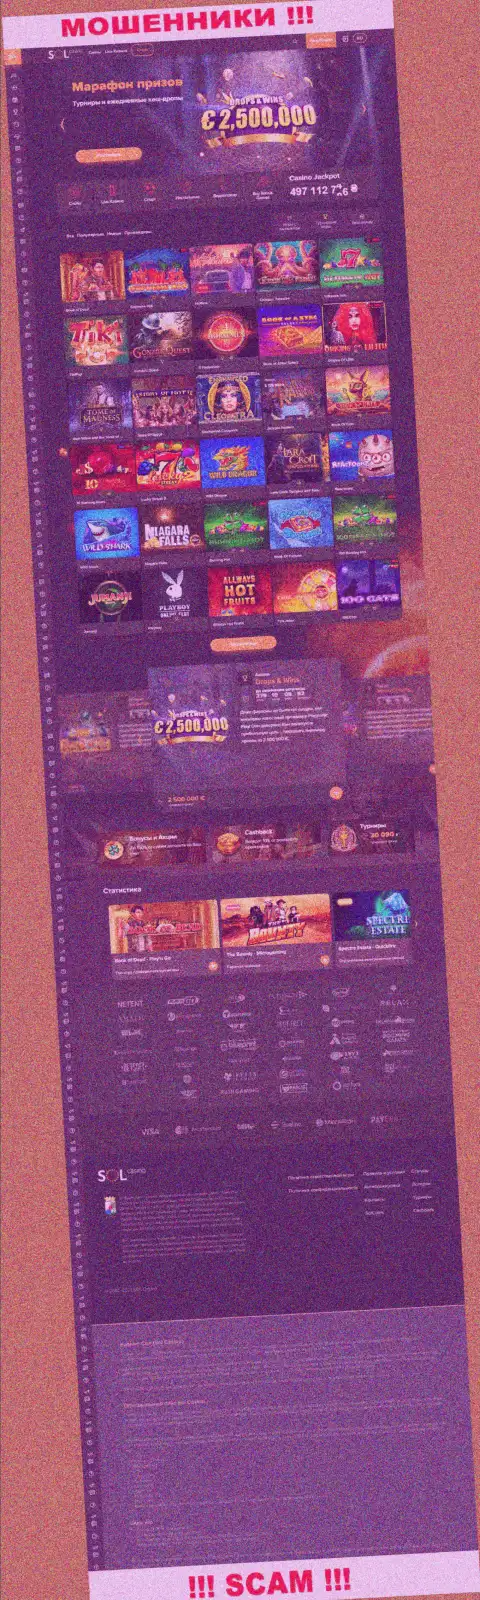 Главная страница официального сайта мошенников Sol Casino